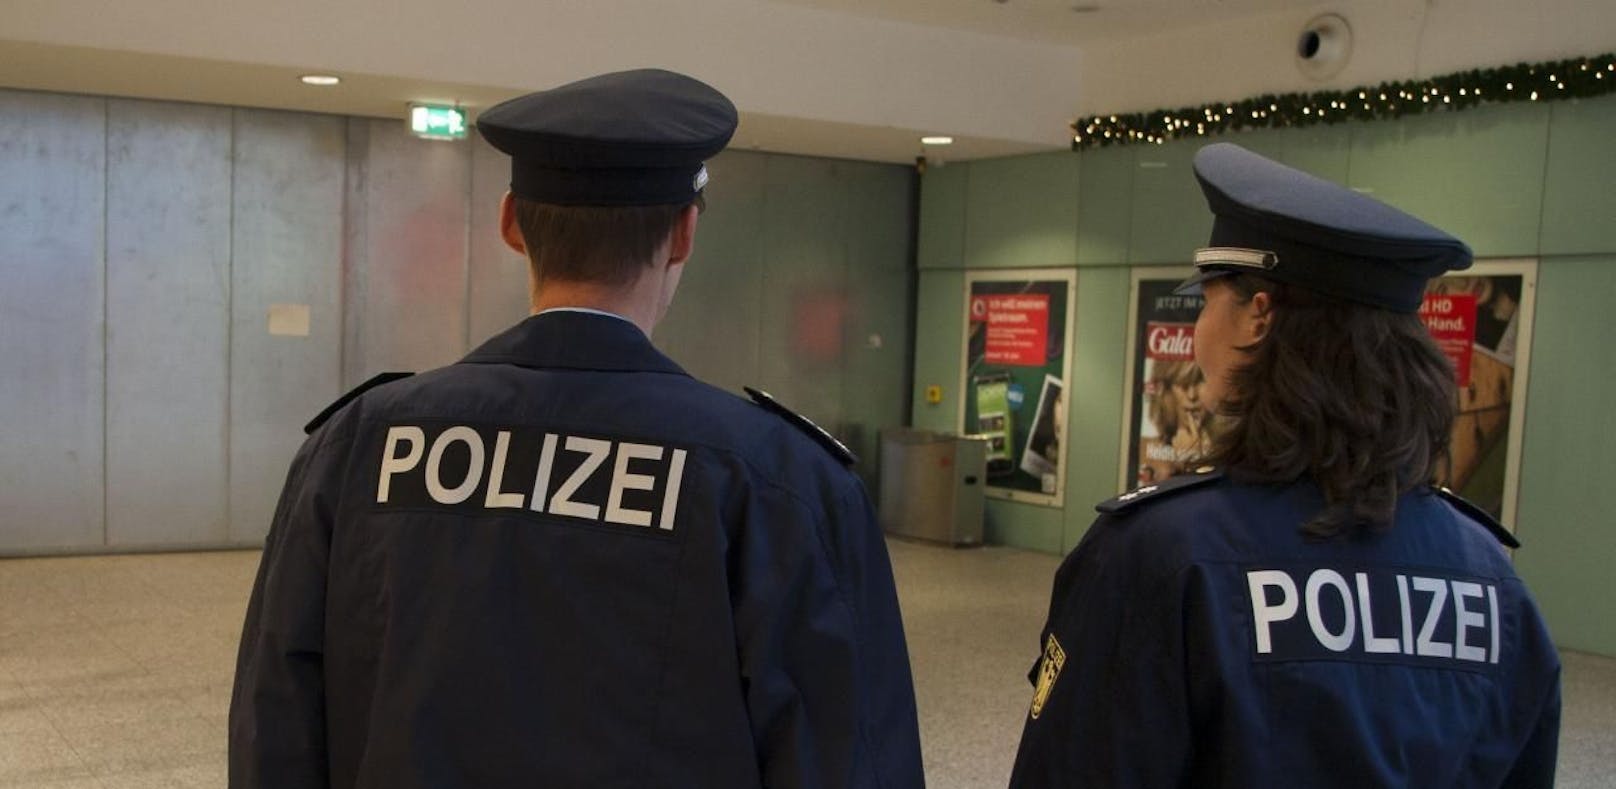 Laut dem zuständigen Polizeipräsidium in Koblenz hat sich der Polizist schriftlich verpflichtet, Frauen künftig die Hand zu schütteln. (Symbolbild)